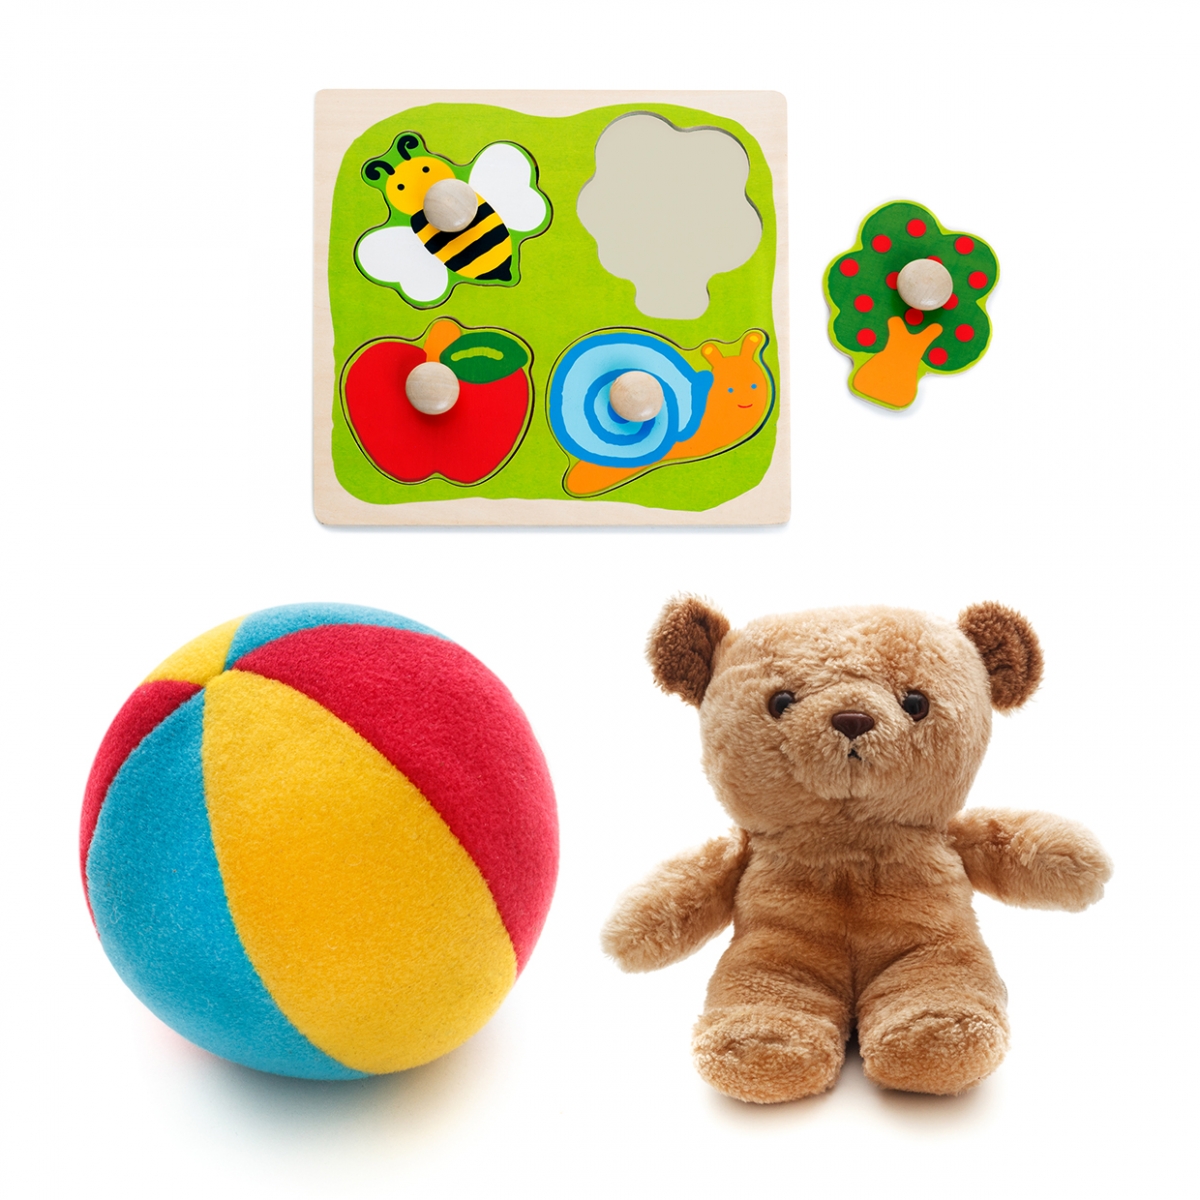 Imagen en la que se ven tres juguetes: una pelota de espuma, un osito y encajables